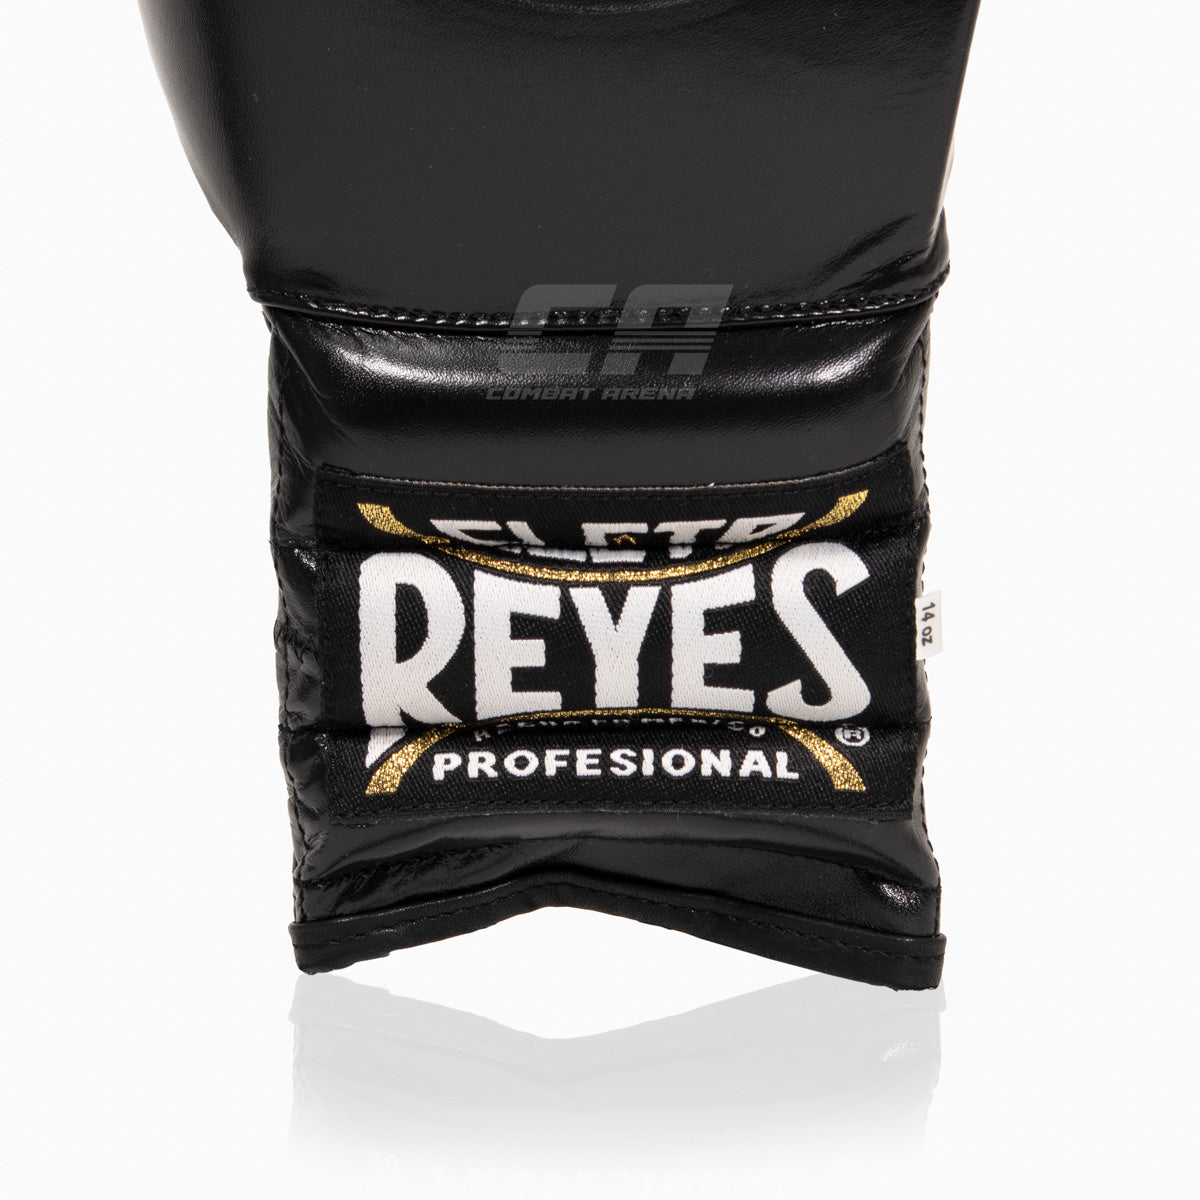 Boxhandschuhe Cleto Reyes Traditional Training CE4 Schwarz-silber mit Schnürsenkeln